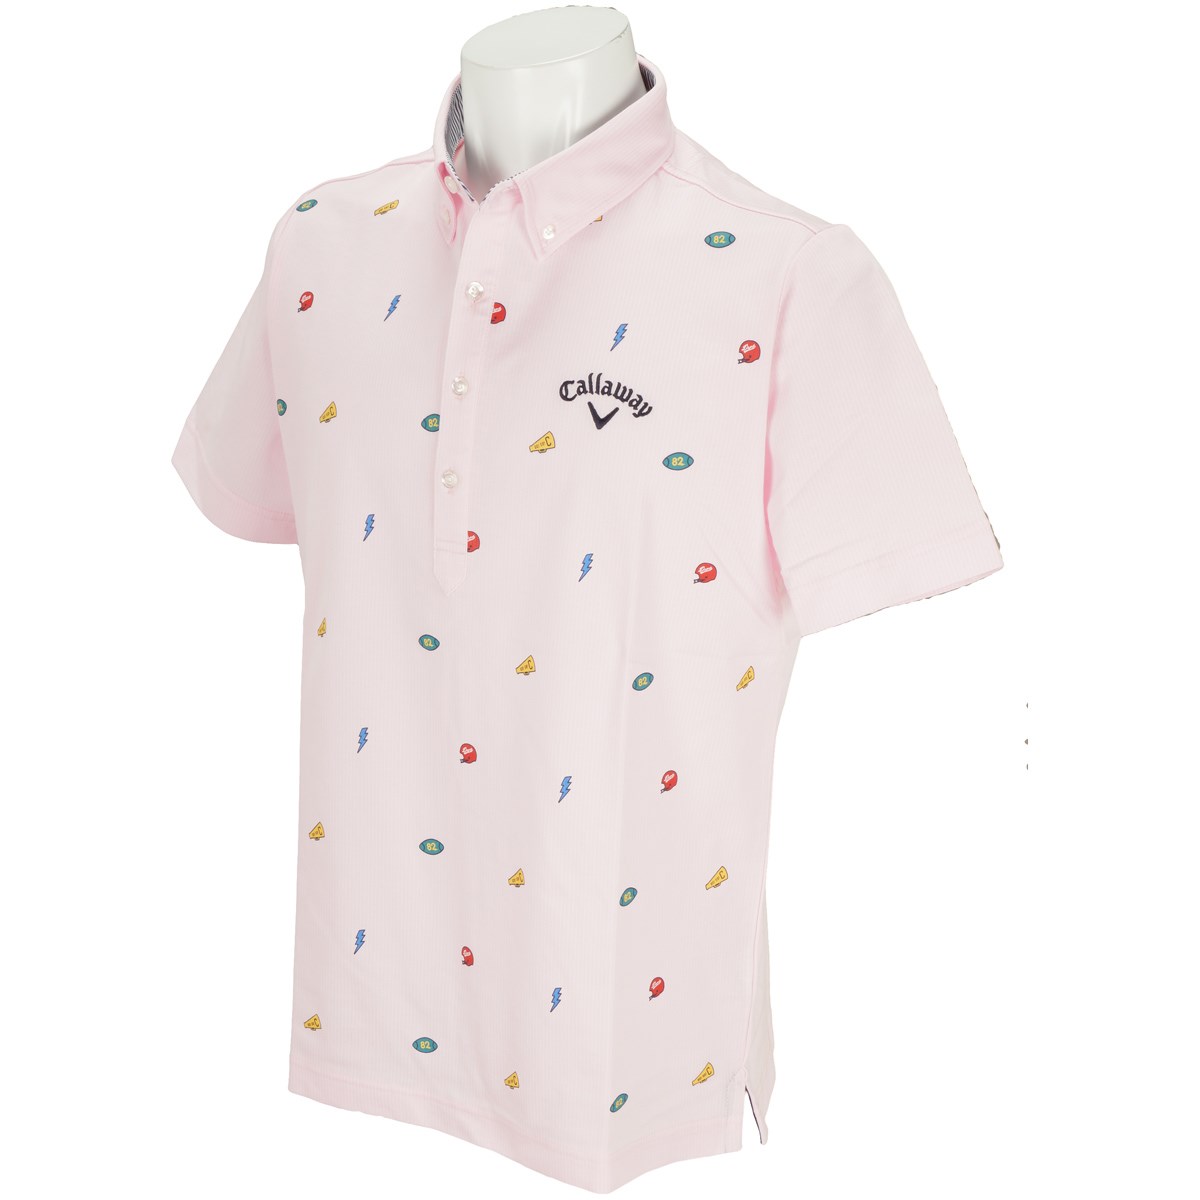 キャロウェイゴルフ(Callaway Golf) モチーフプリントカットストライプボタンダウンカラー半袖ポロシャツ 